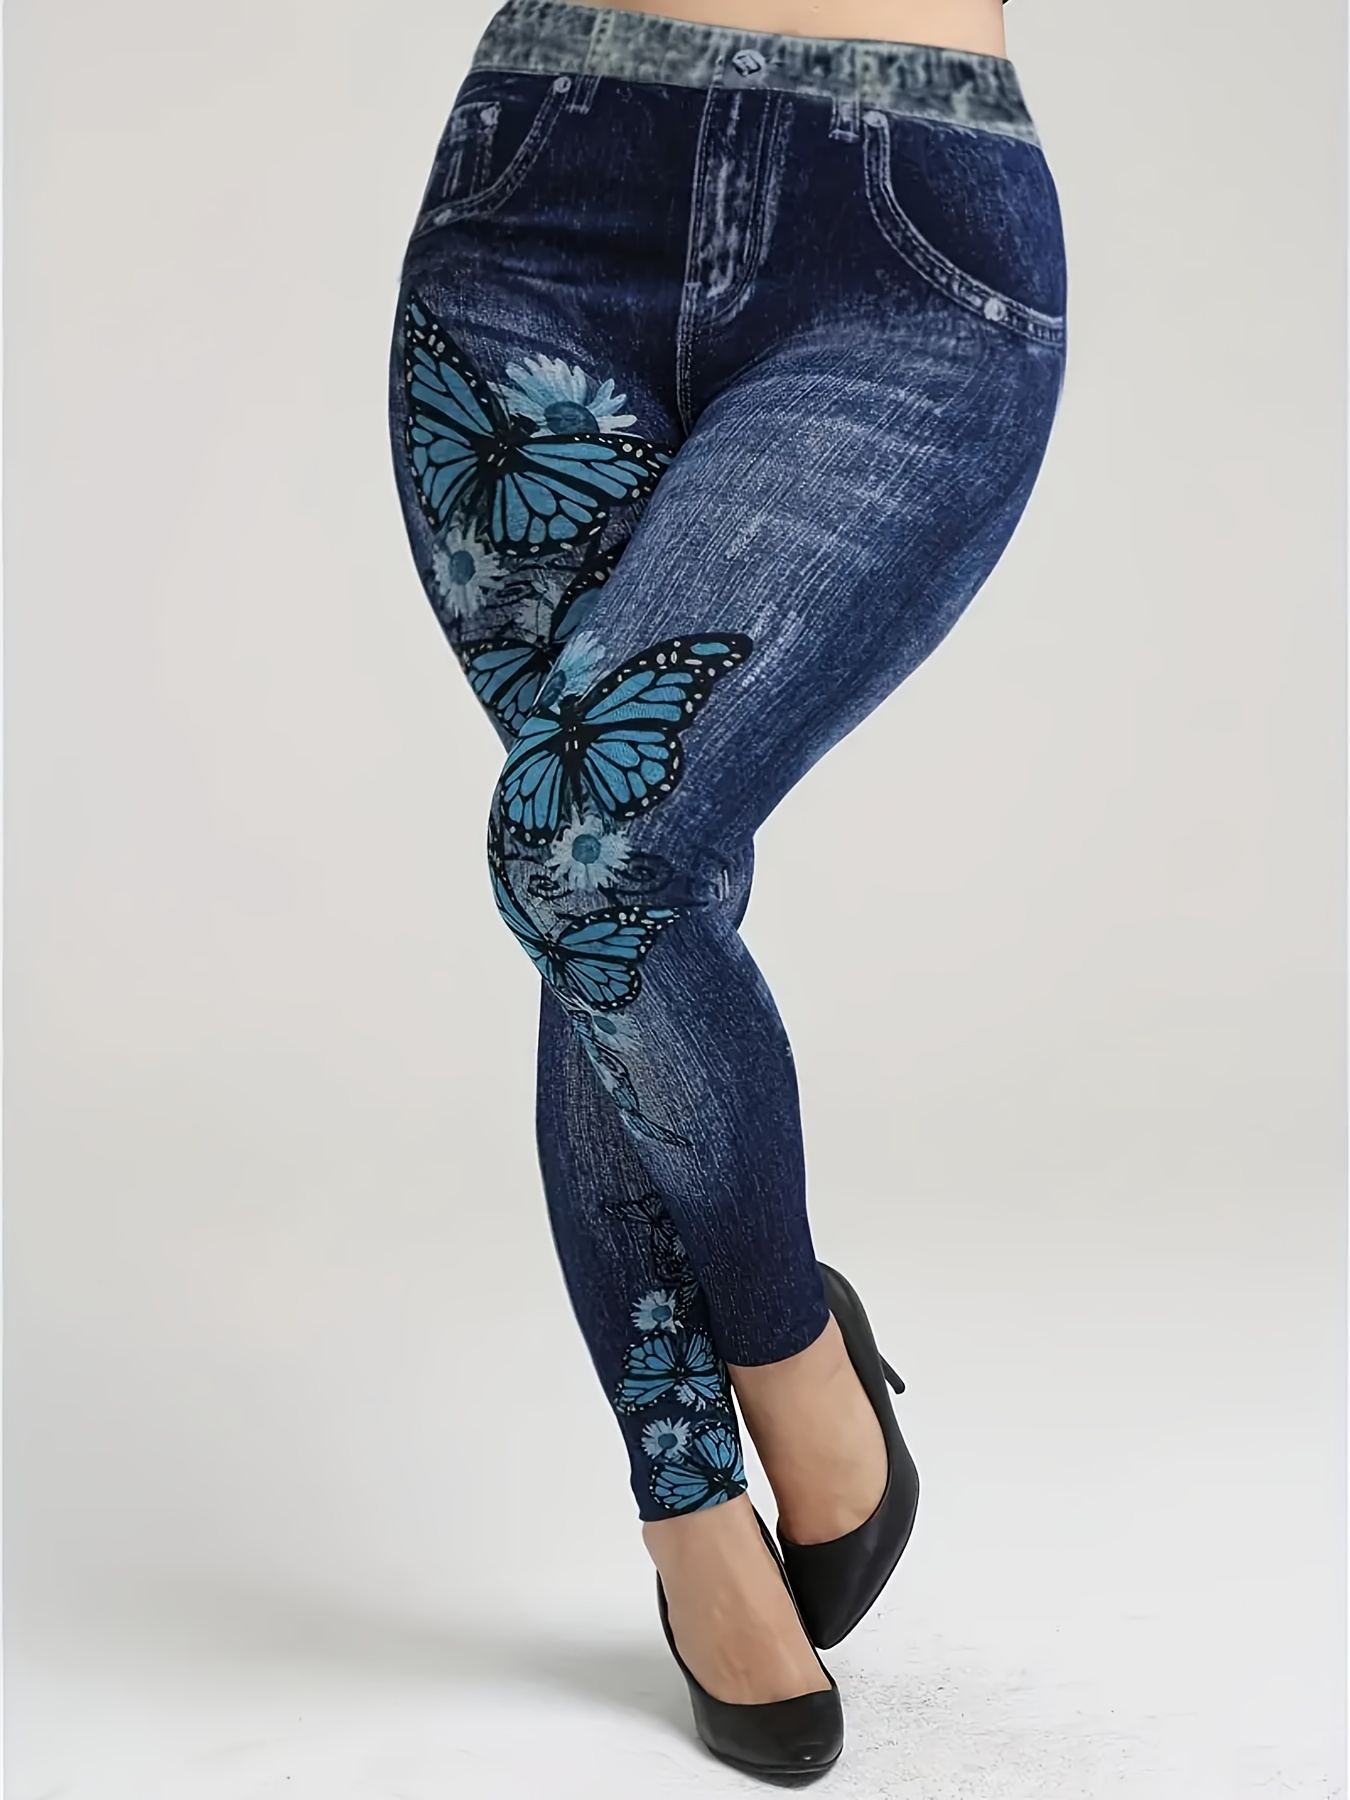 EHQJNJ Gym Leggings Yoga Pants Plus Size Women's Butterfly Print